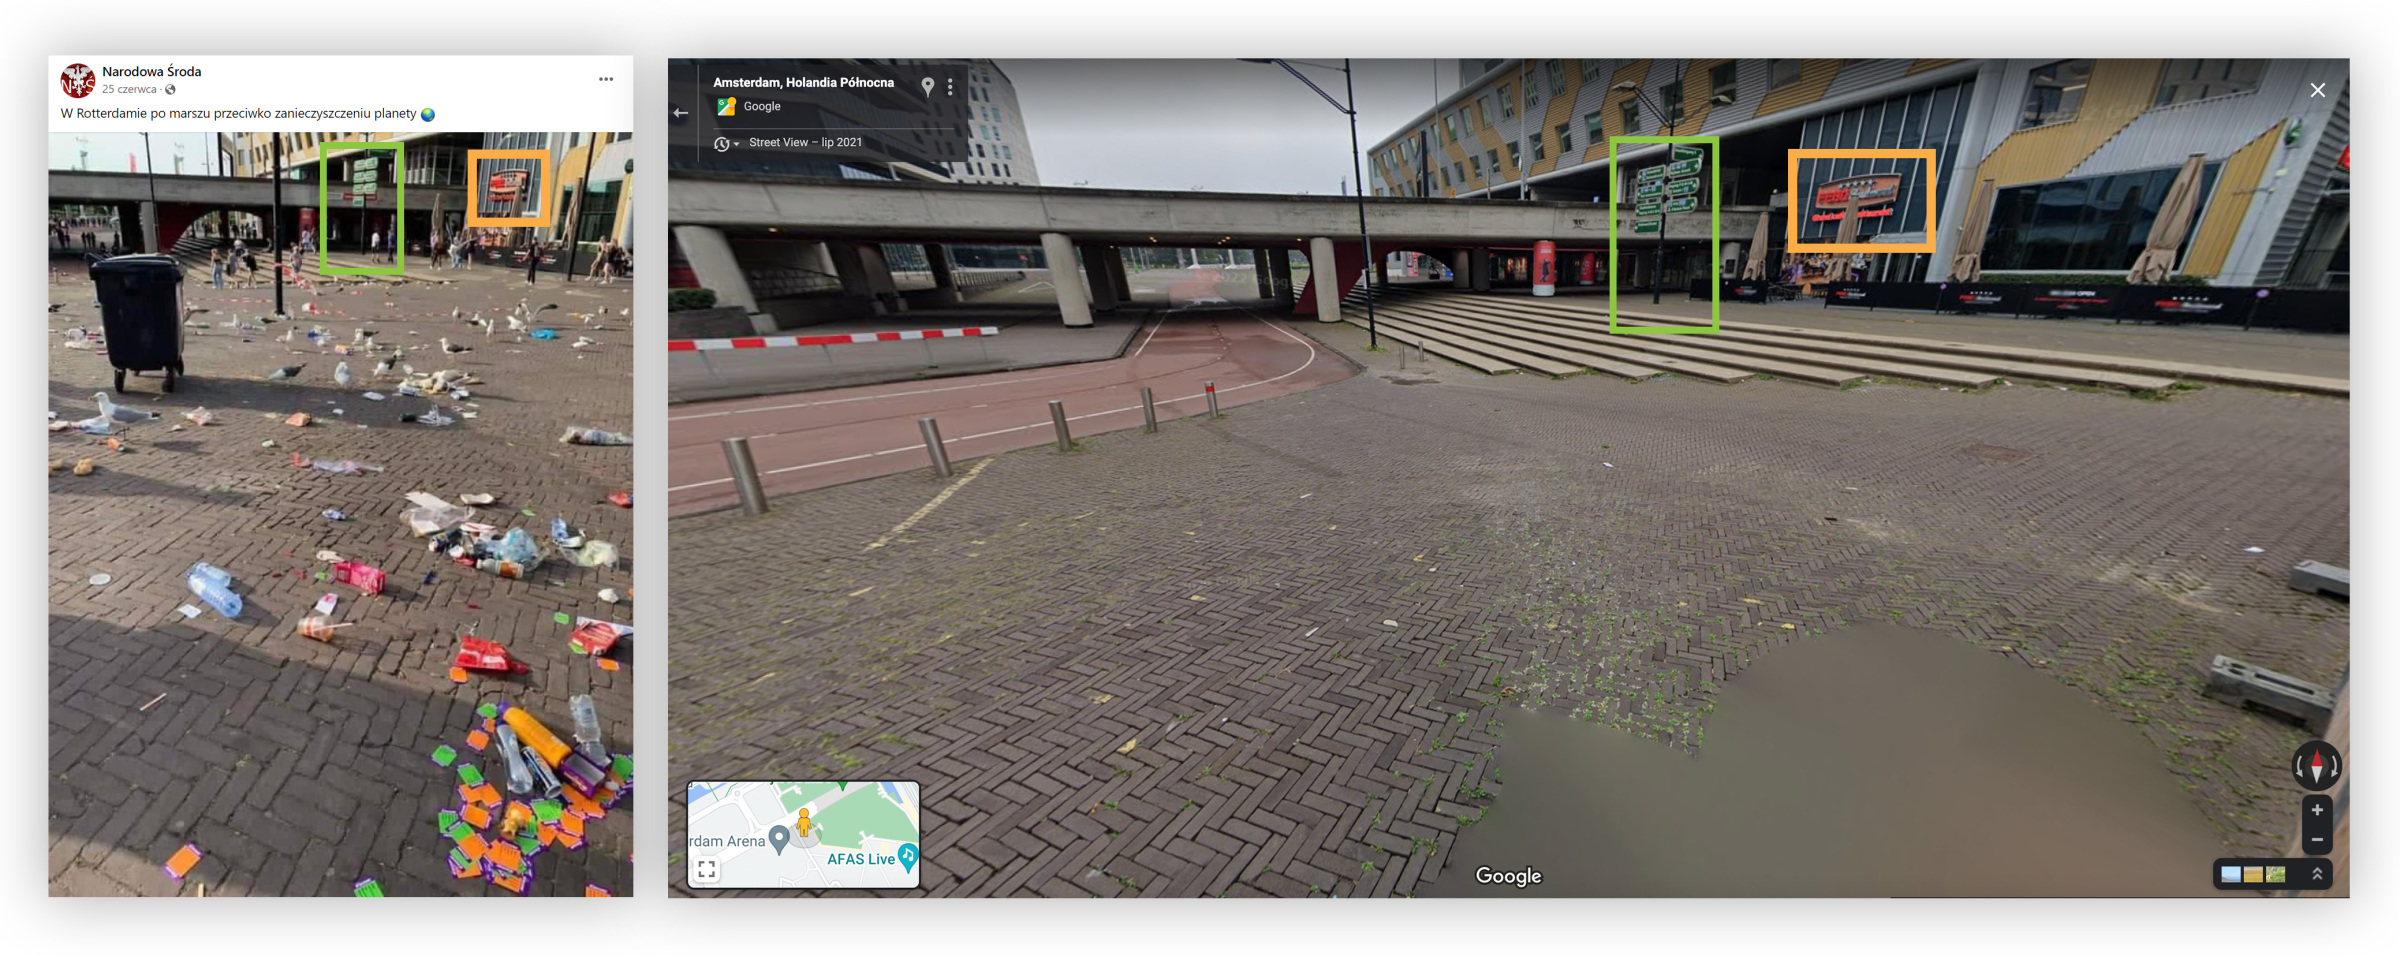 Na zdjęciu widać ulicę w Amsterdamie, a nie Rotterdamie